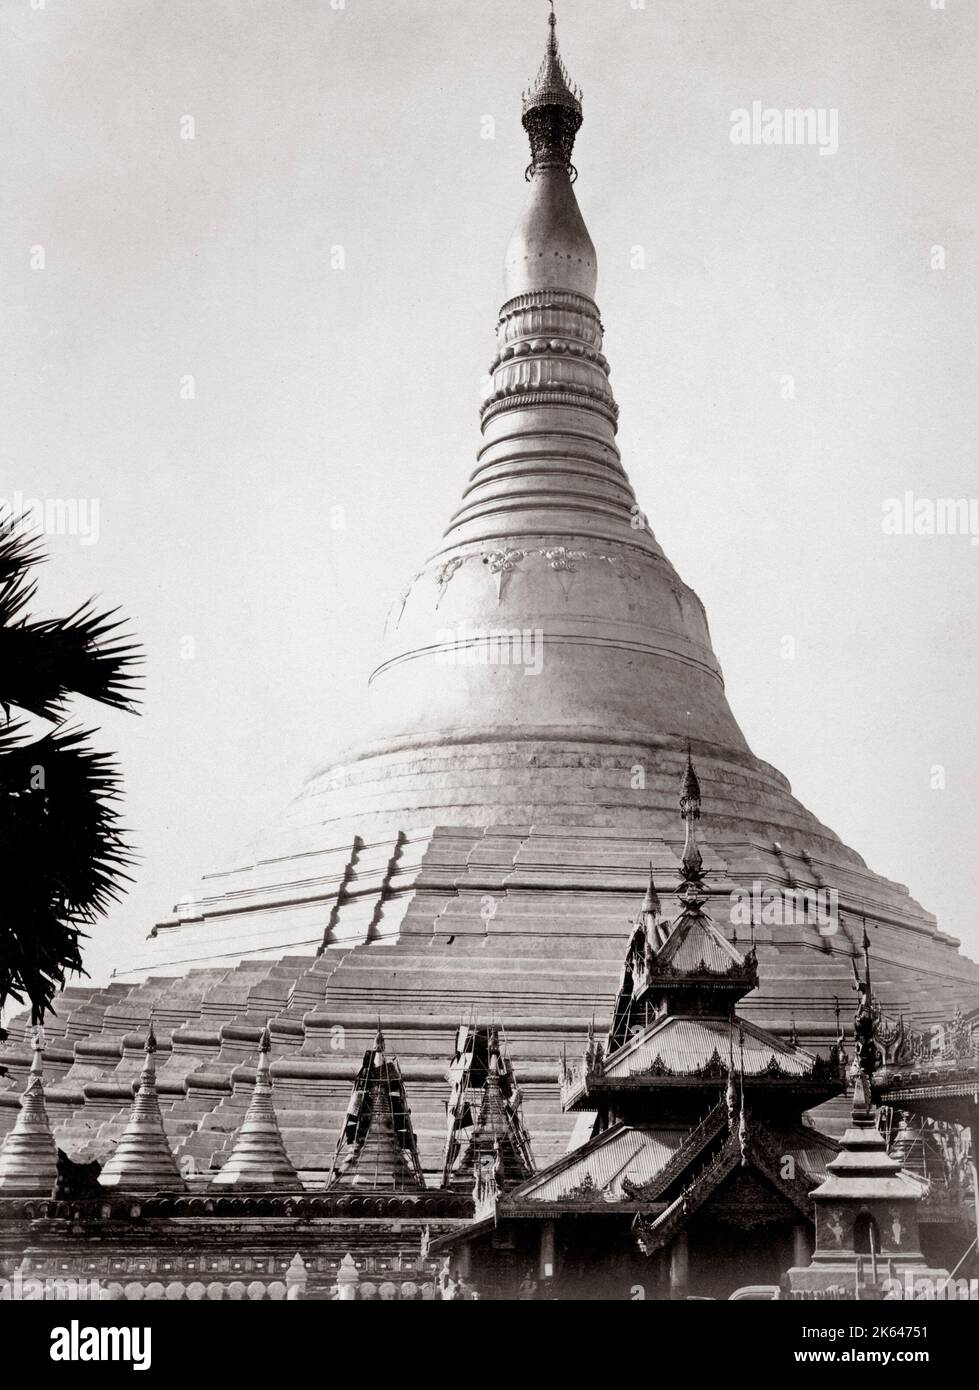 C.1880 s pour l'Inde - la pagode Shwedagon, officiellement appelé pagode Shwedagon Zedi Daw et aussi connu comme le grand Dagon Pagoda et la Pagode d'or, est un stupa doré situé à Yangon, Myanmar. Rangoon Birmanie. Banque D'Images